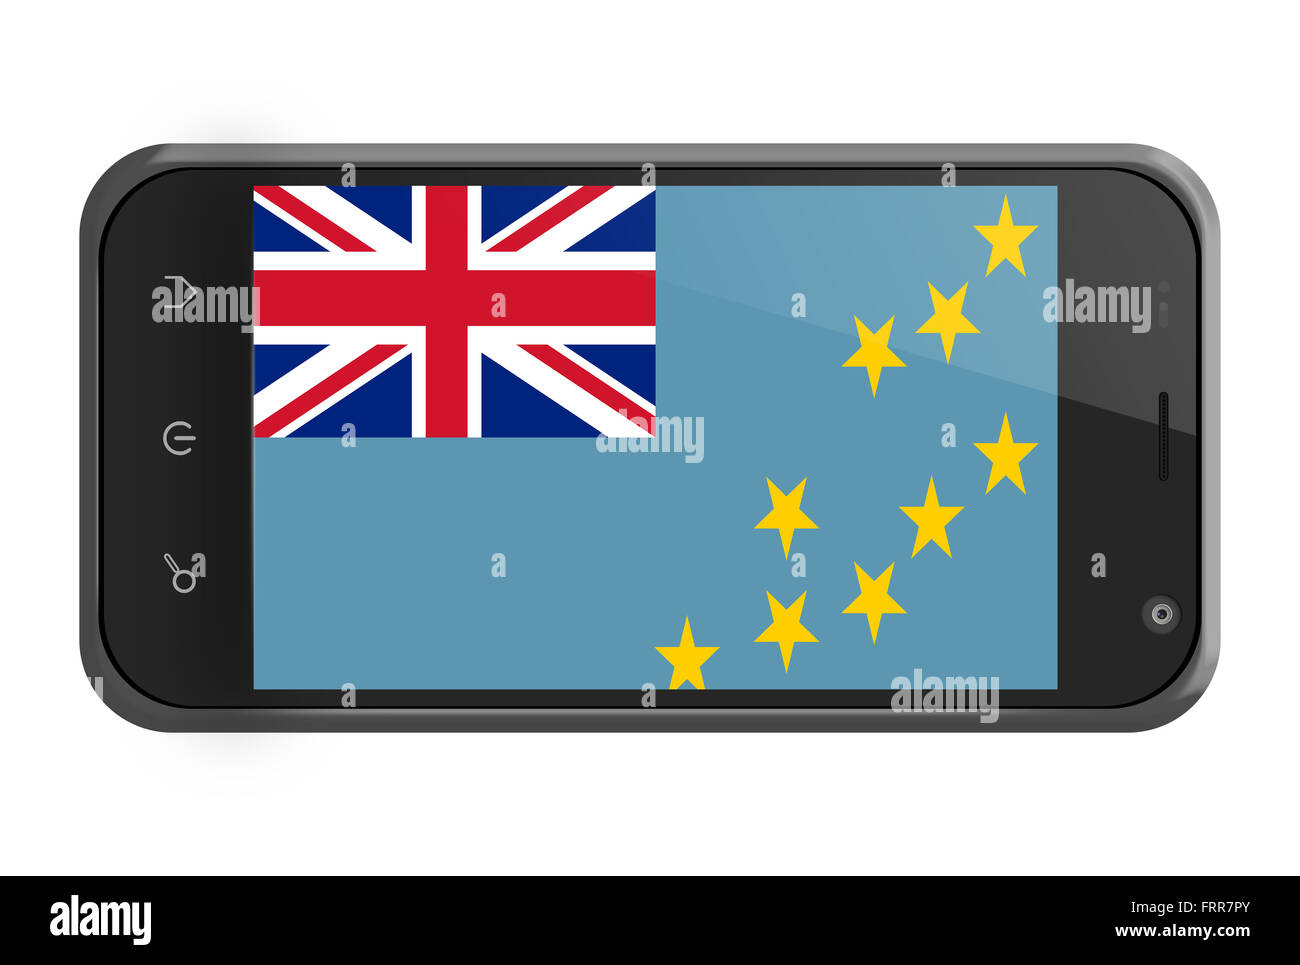 Tuvalu drapeau sur l'écran du smartphone isolated on white Banque D'Images